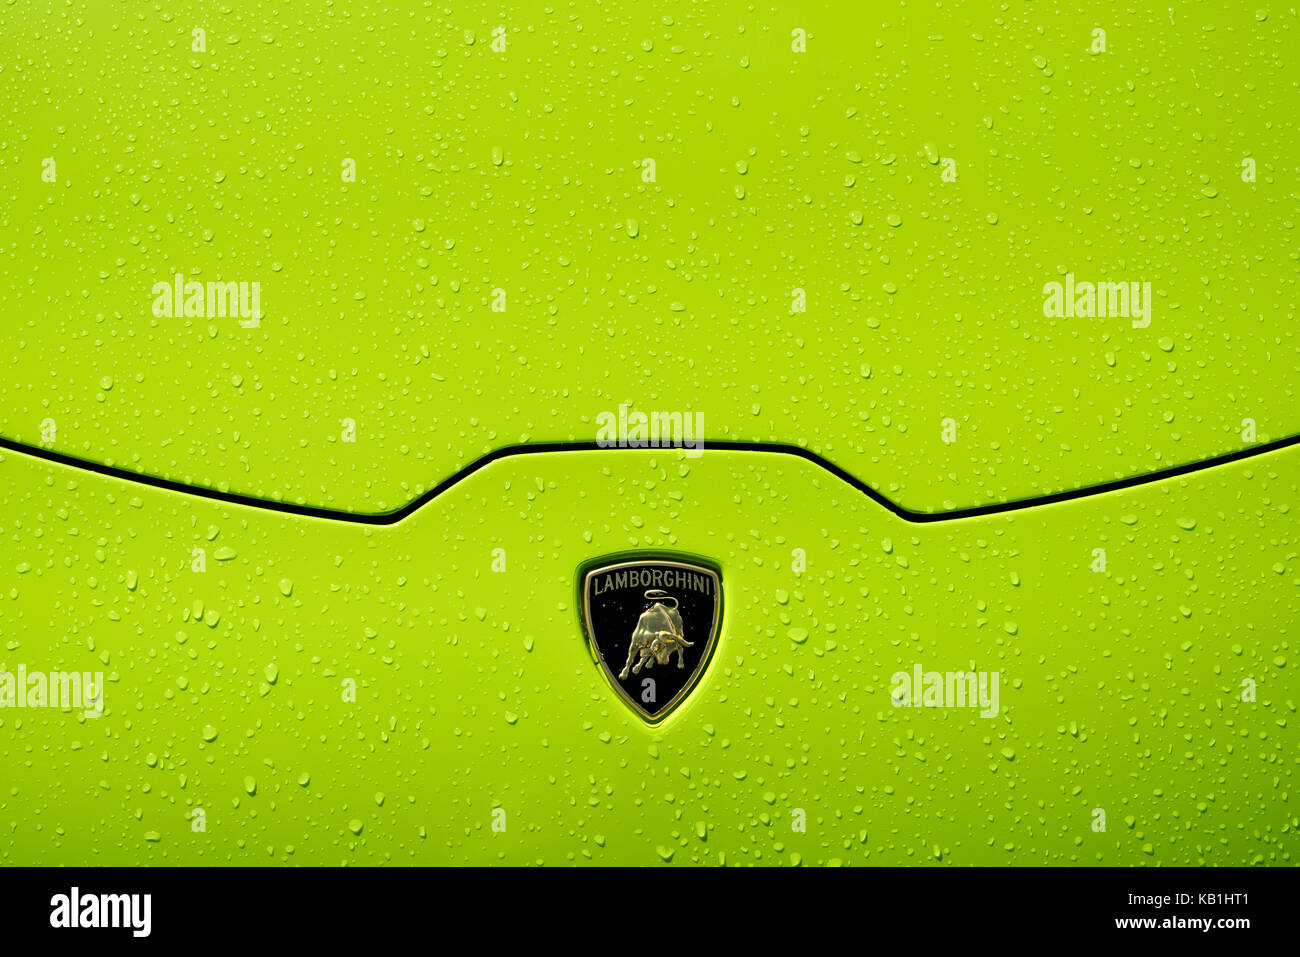 Lamborghini huracán lp 610-4 cofano dettaglio con badge, verde lime di verniciatura e le gocce di pioggia. Foto Stock